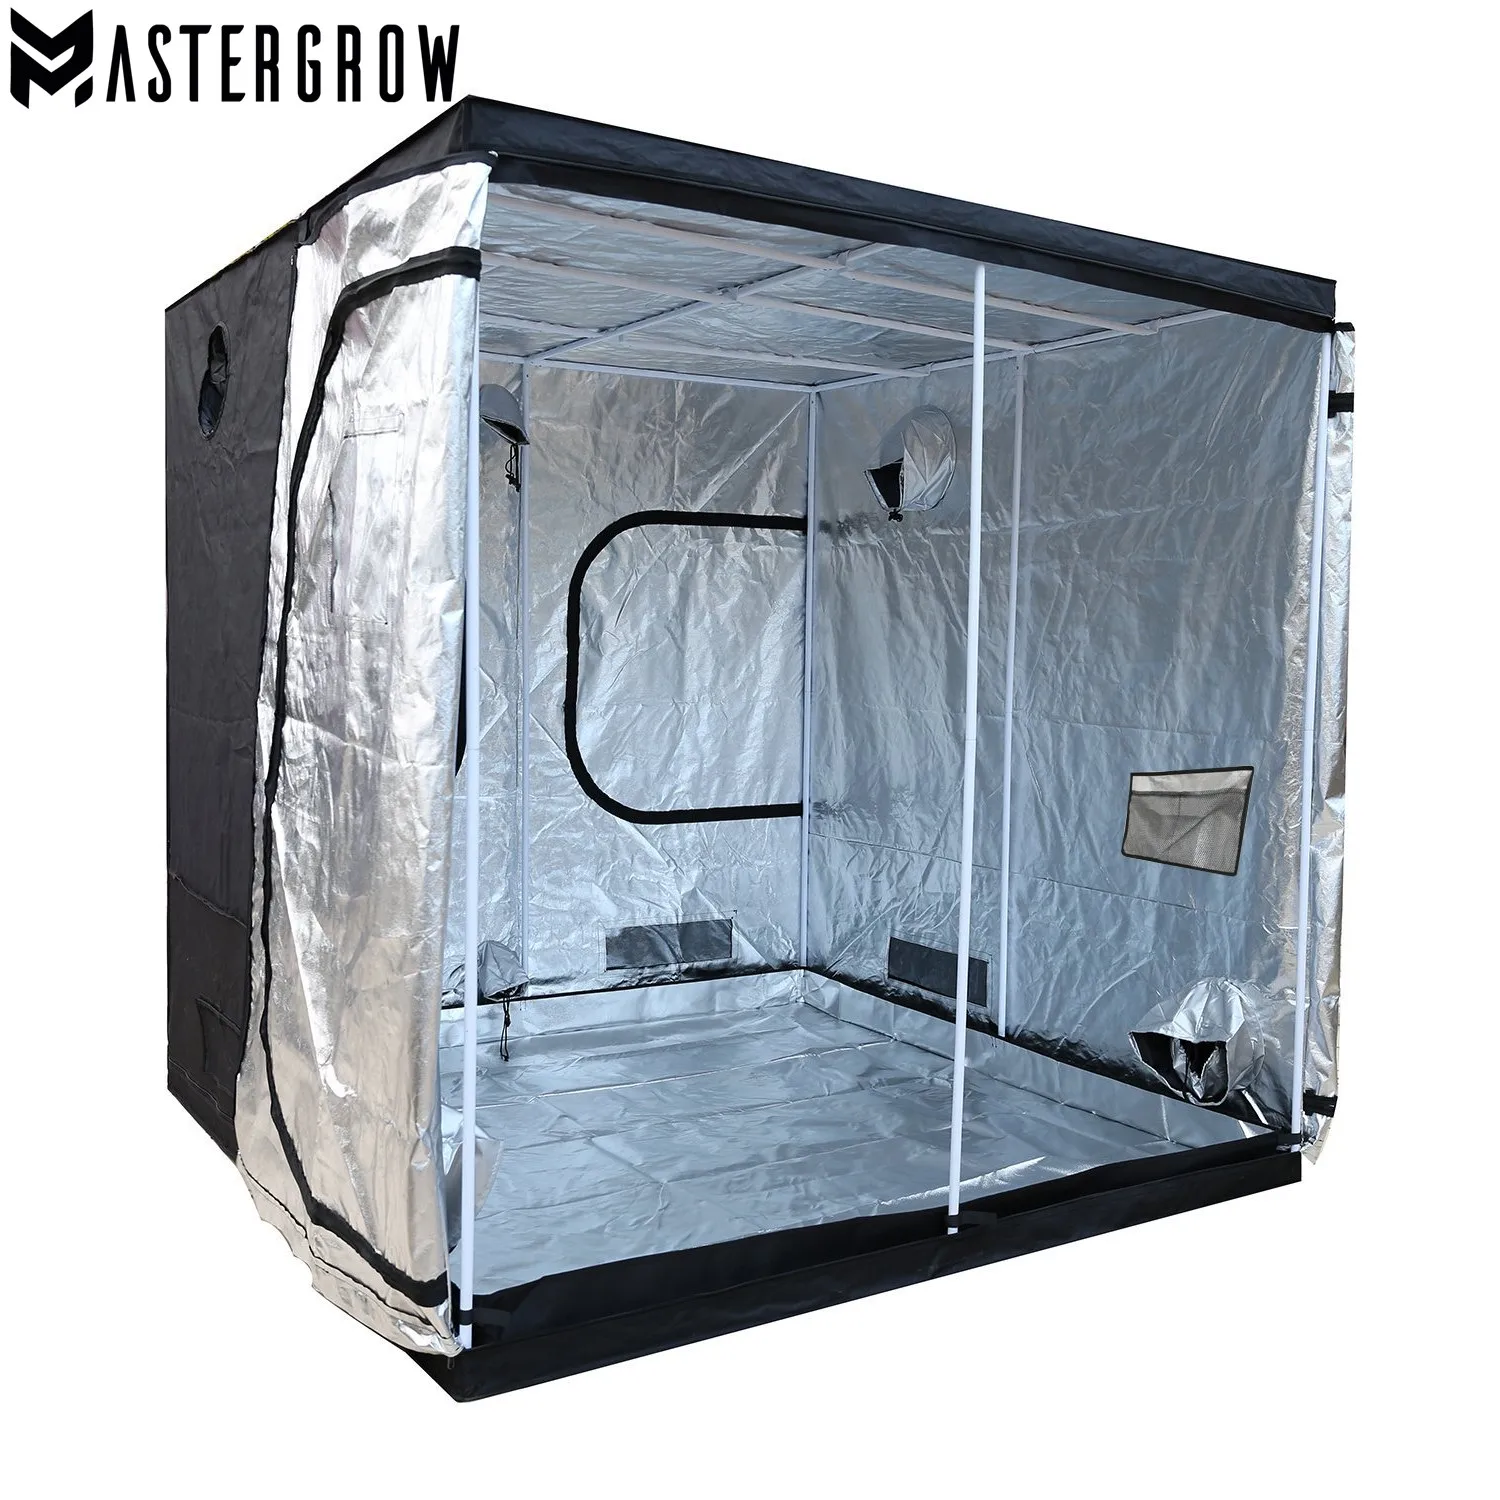 MasterGrow 240X240X200 см внутреннего гидропоника, шатер для выращивания, коробка для выращивания растений, светоотражающие майларовые нетоксичные